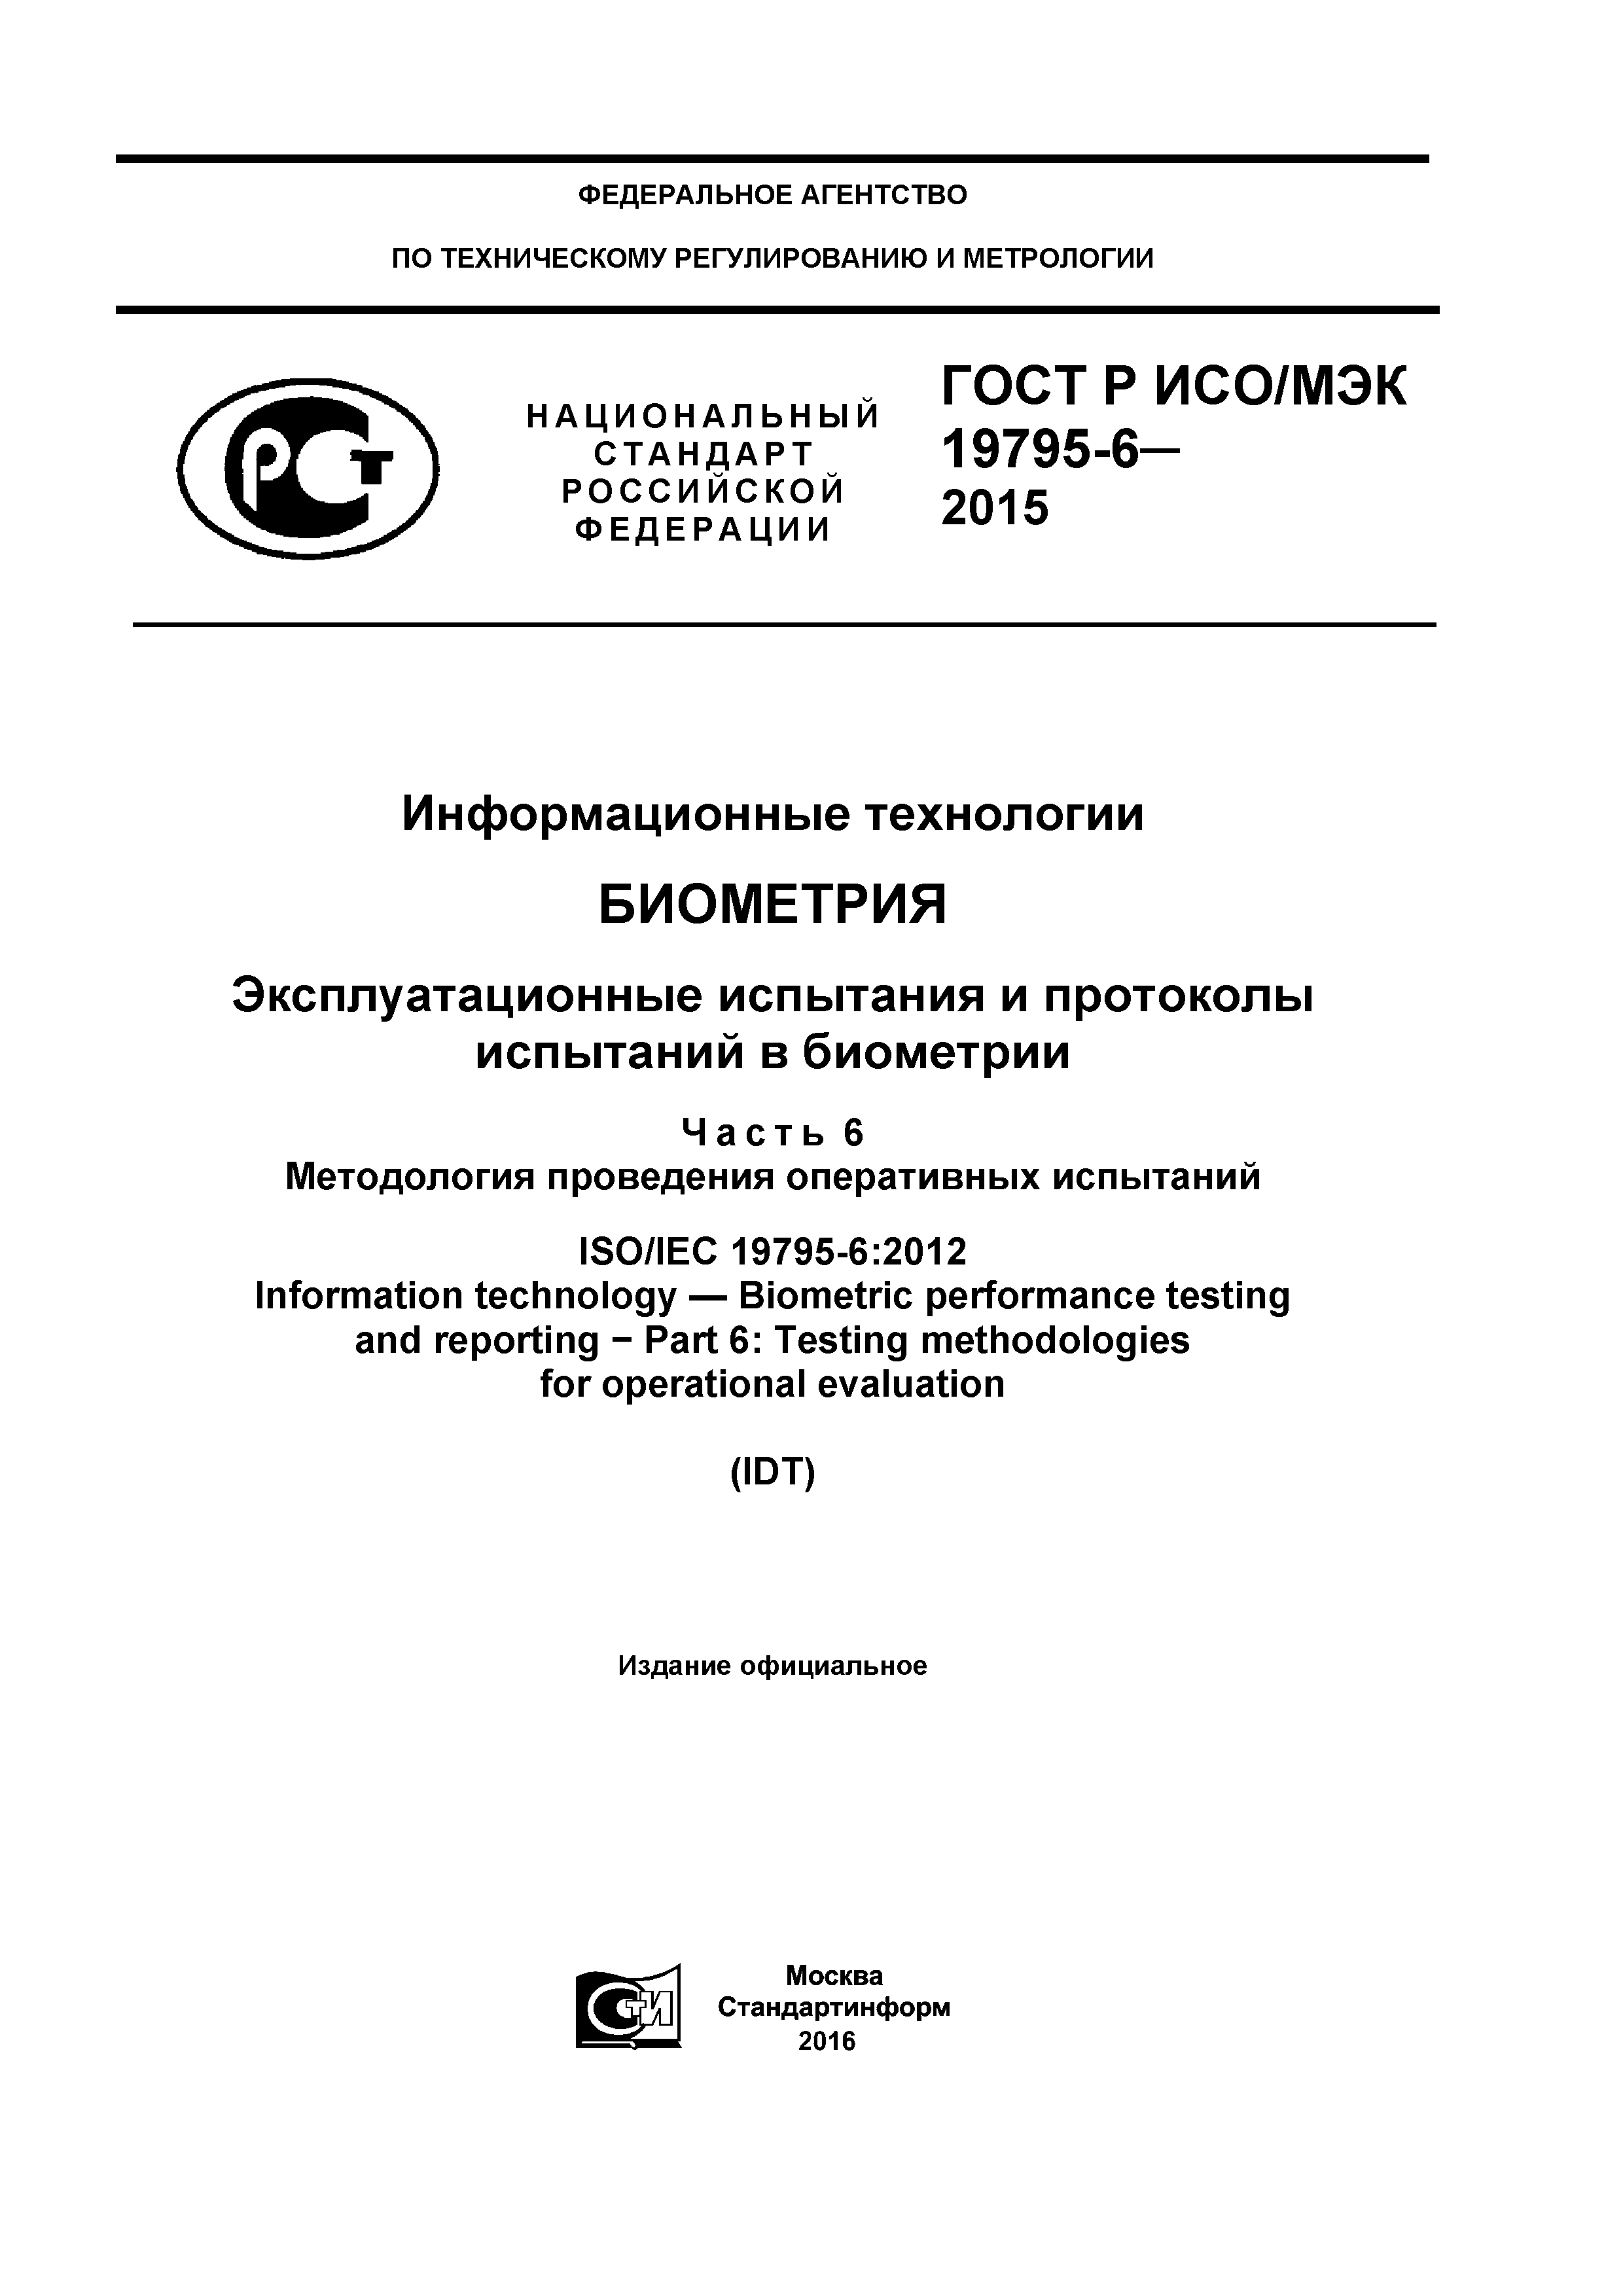 ГОСТ Р ИСО/МЭК 19795-6-2015